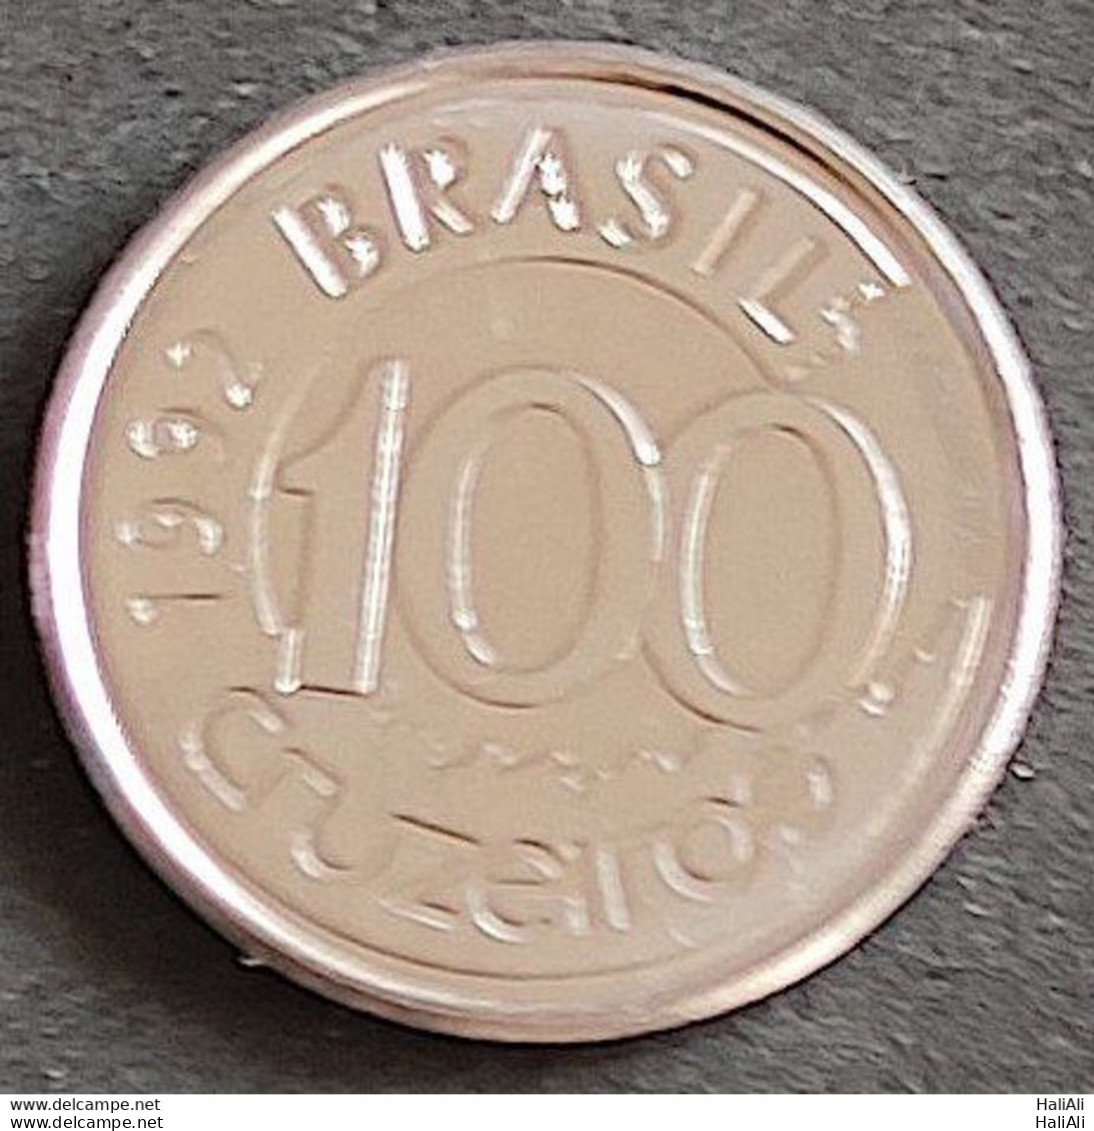 Coin Brazil Moeda Brasil 1992 100 Cruzeiros 1 - Brasilien